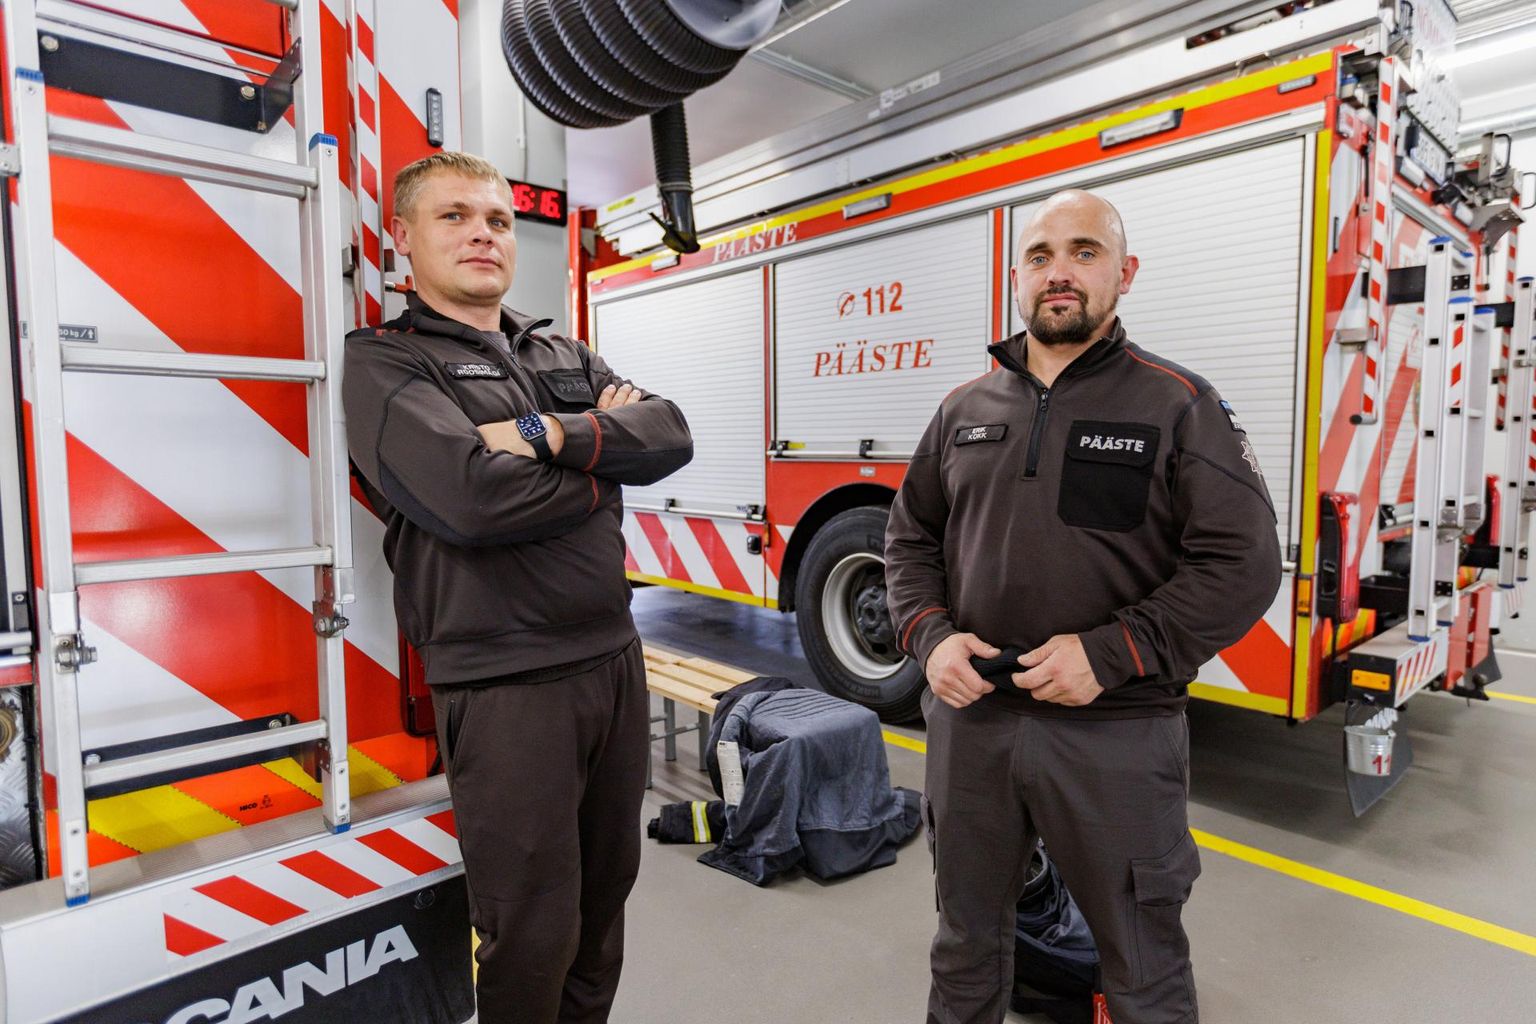 Nõmme komando päästjad Kristo Roosimägi (vasakul) ja Erik Kokk tõdevad, et lisatööd tegemata on keeruline toime tulla. Mitme töö tegemine on kurnav ja eraelu elamiseks ei jätku sageli jõudu ega aega.